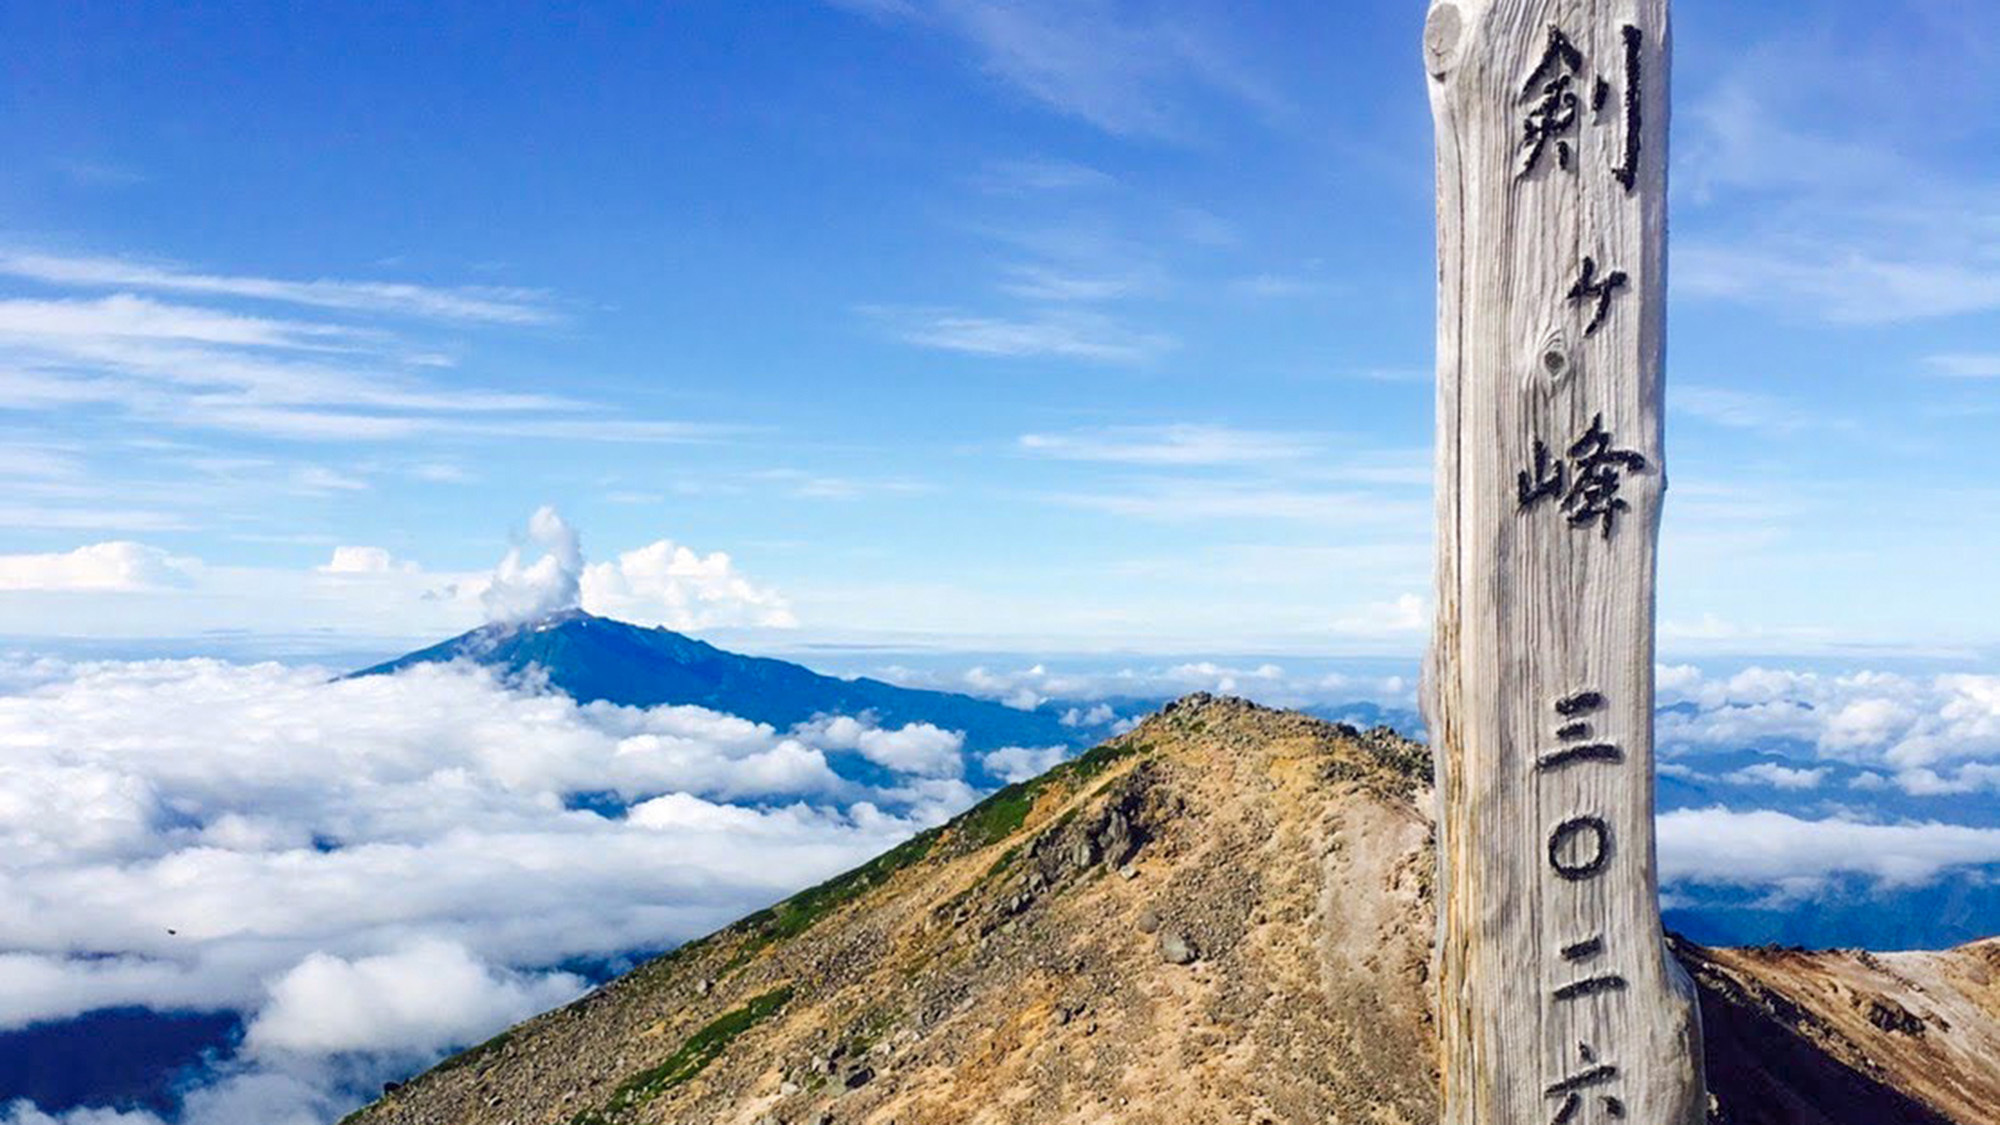 ・＜周辺＞乗鞍岳の主峰である剣ケ峰（けんがみね）。標高3026mは日本で19番目の高さです